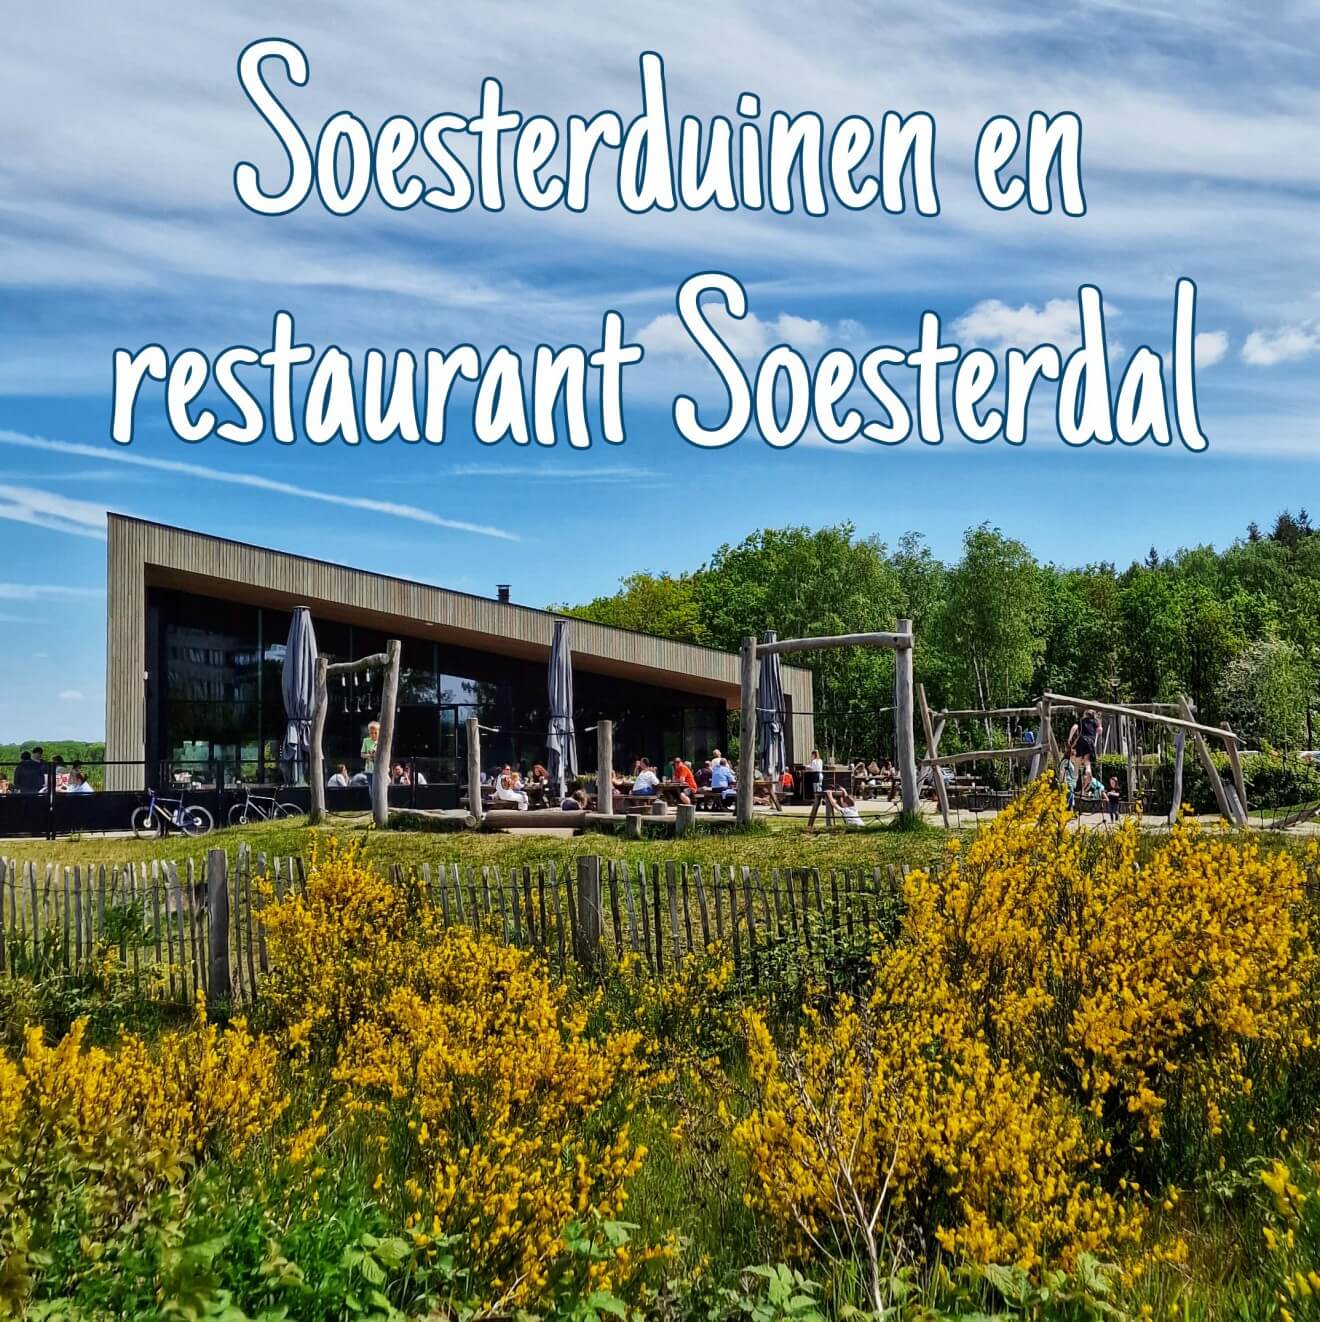 Wandelen in de Soesterduinen en naar restaurant Soesterdal. Op zoek naar een leuk uitje met kinderen in de buurt van Amersfoort, Zeist en Soest? Ga wandelen in de Soesterduinen en naar restaurant Soesterdal.